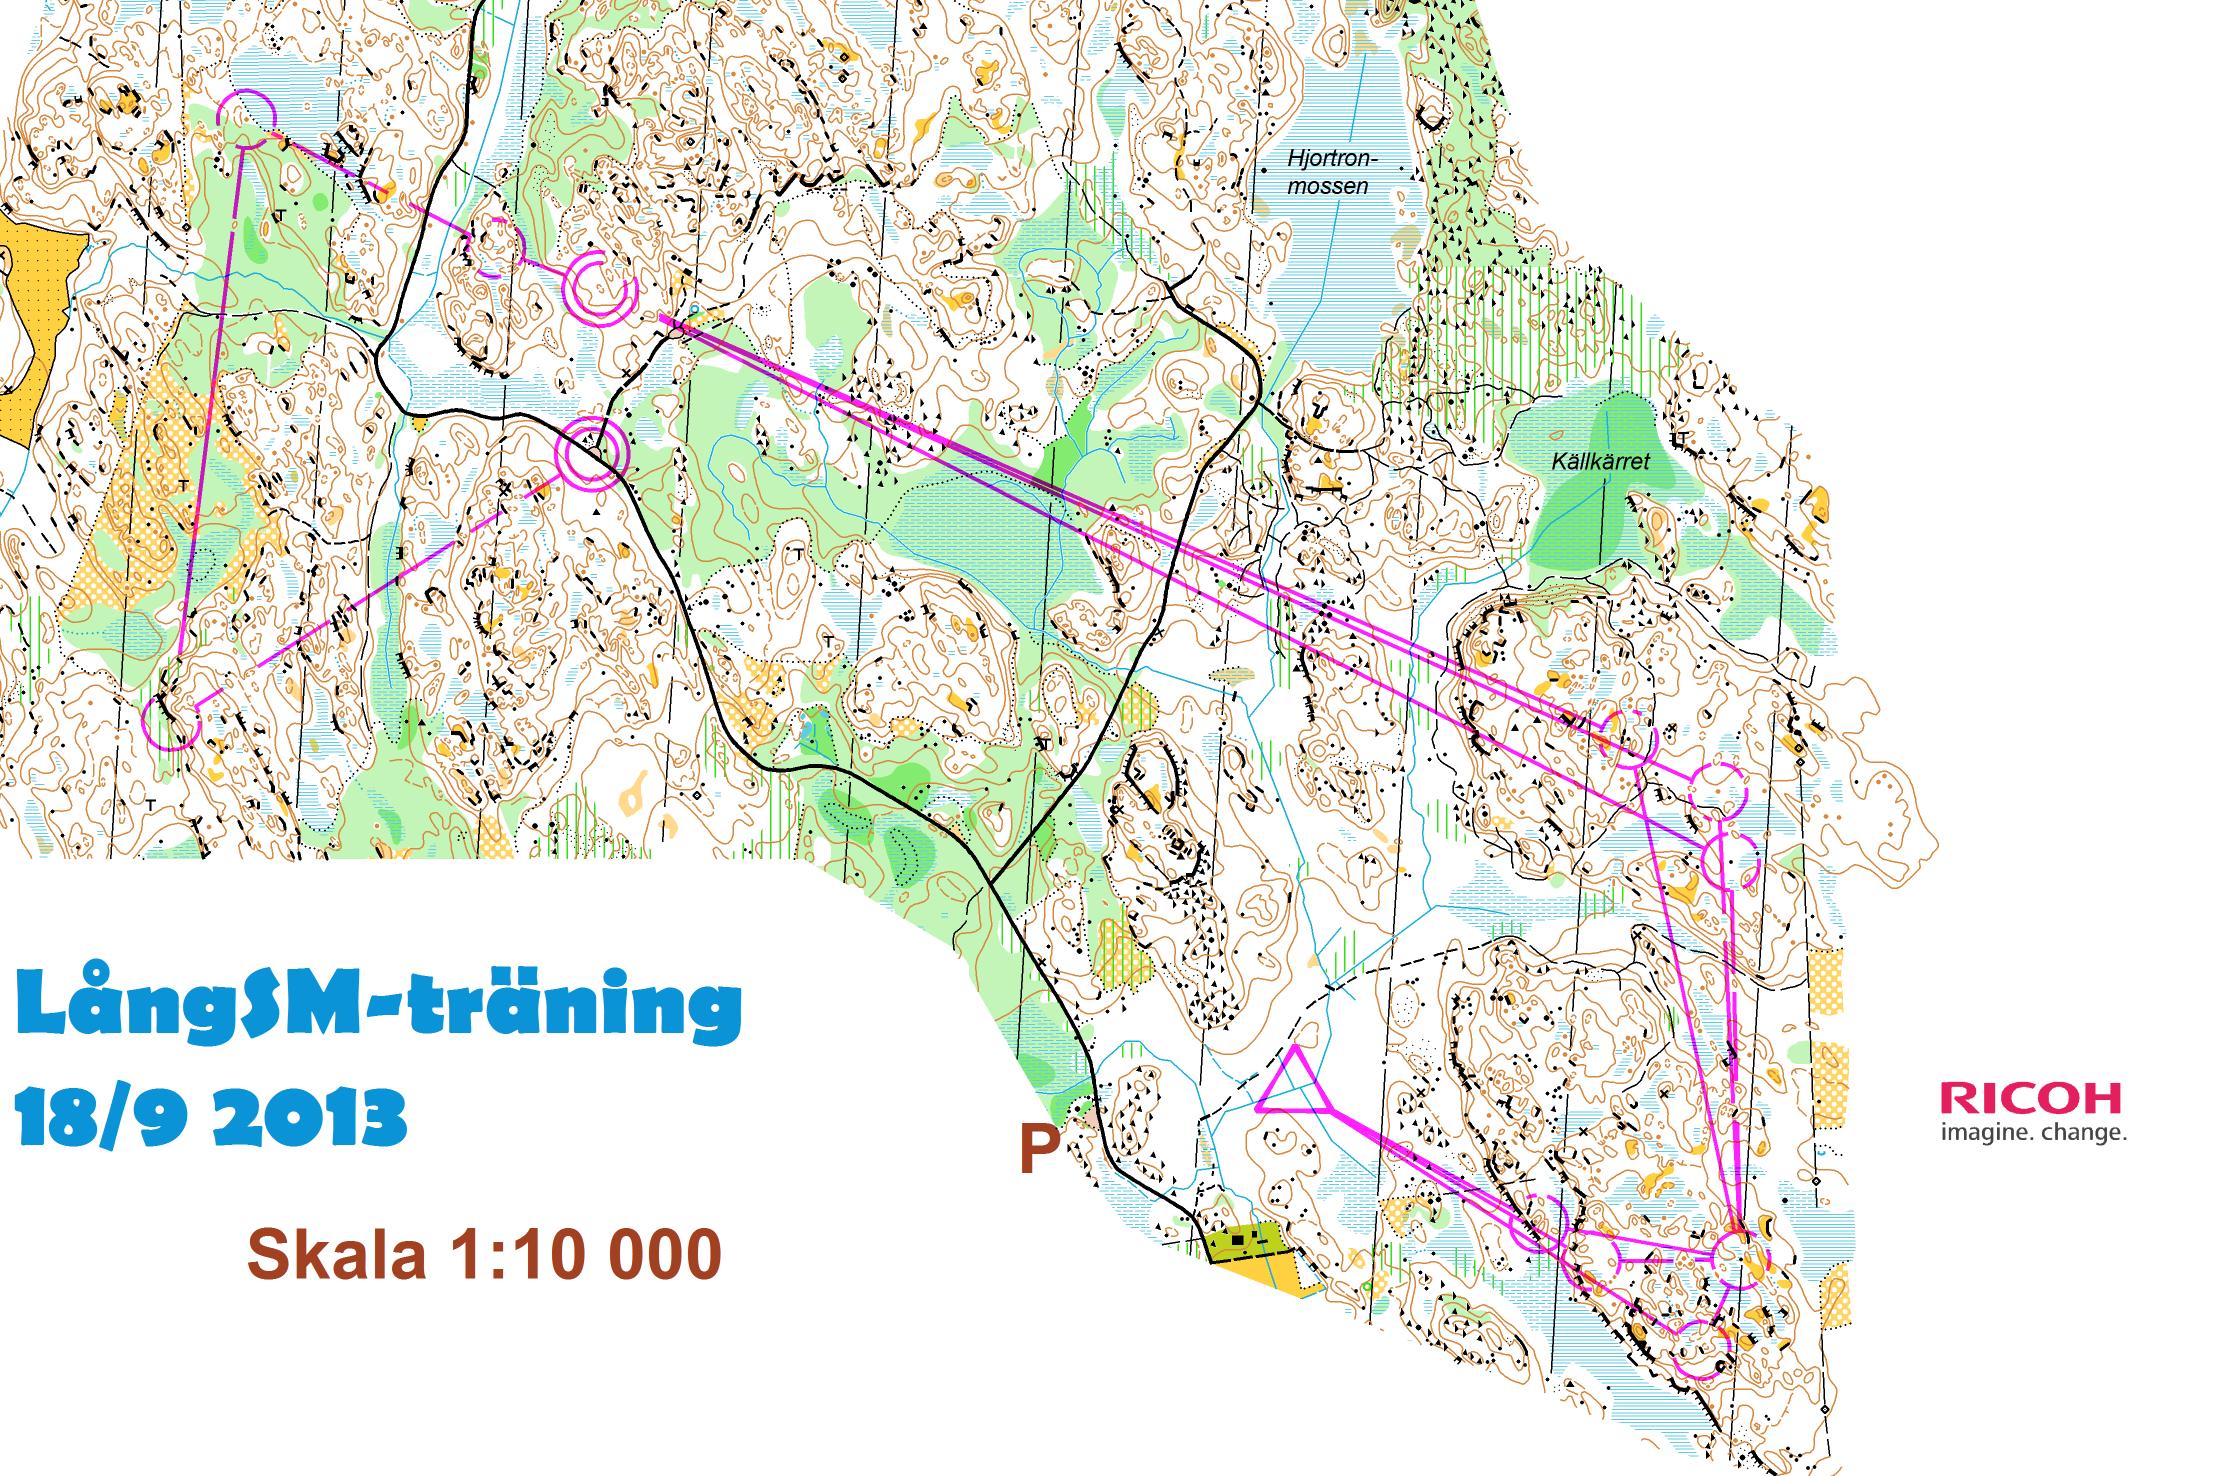 LångSM-träning - Mellan (2013-09-18)